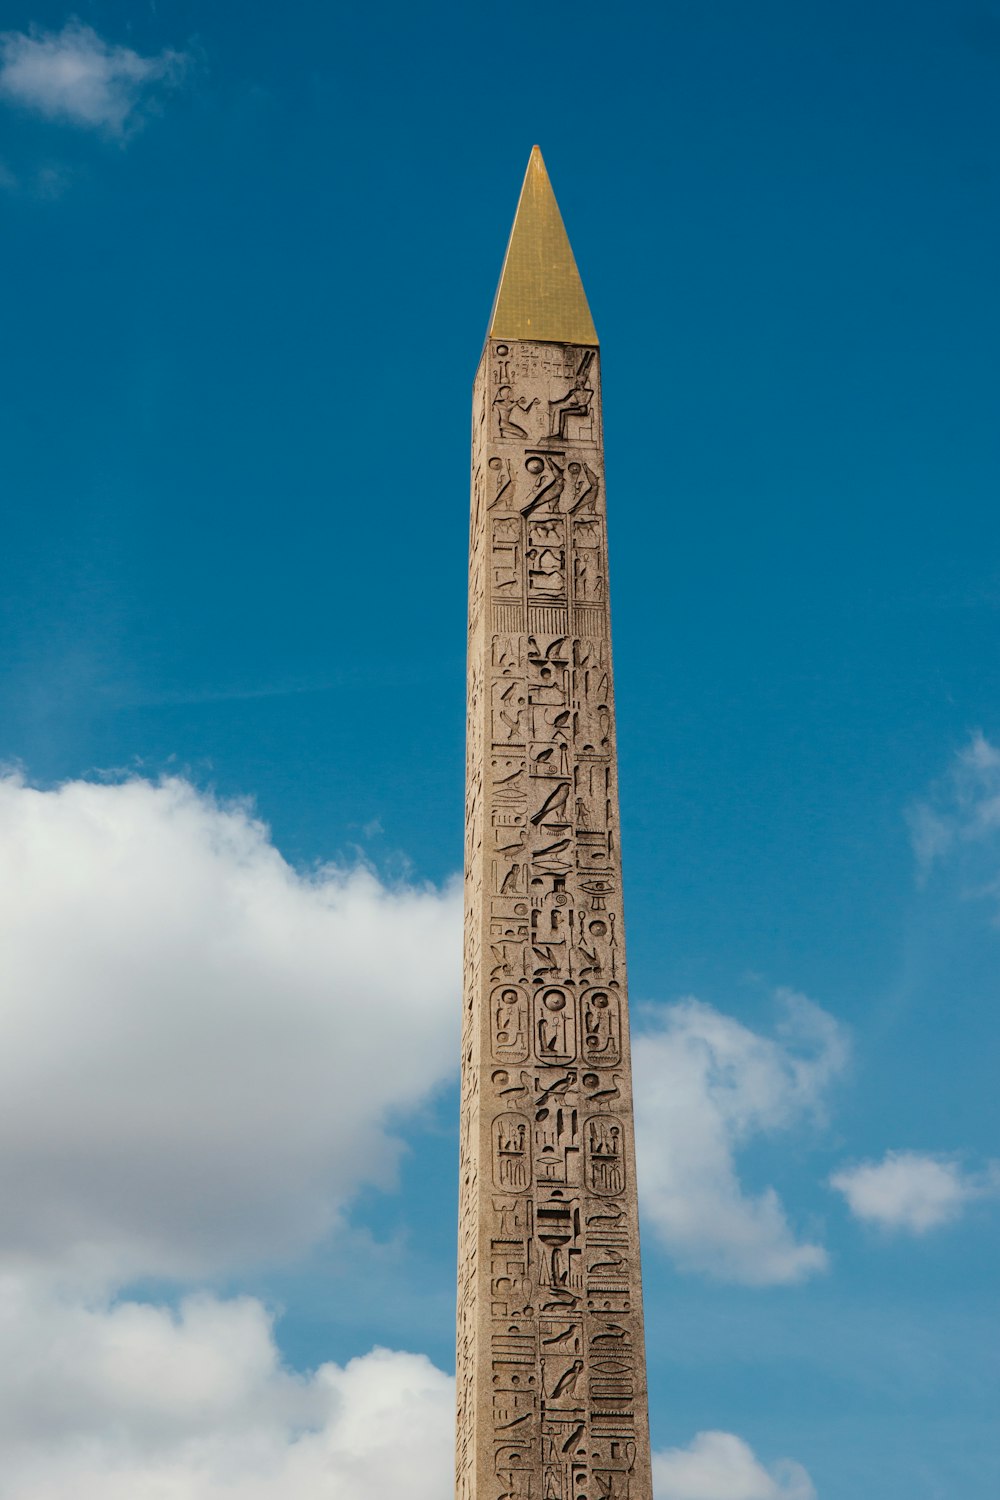 um obelisco alto com escrita egípcia nele